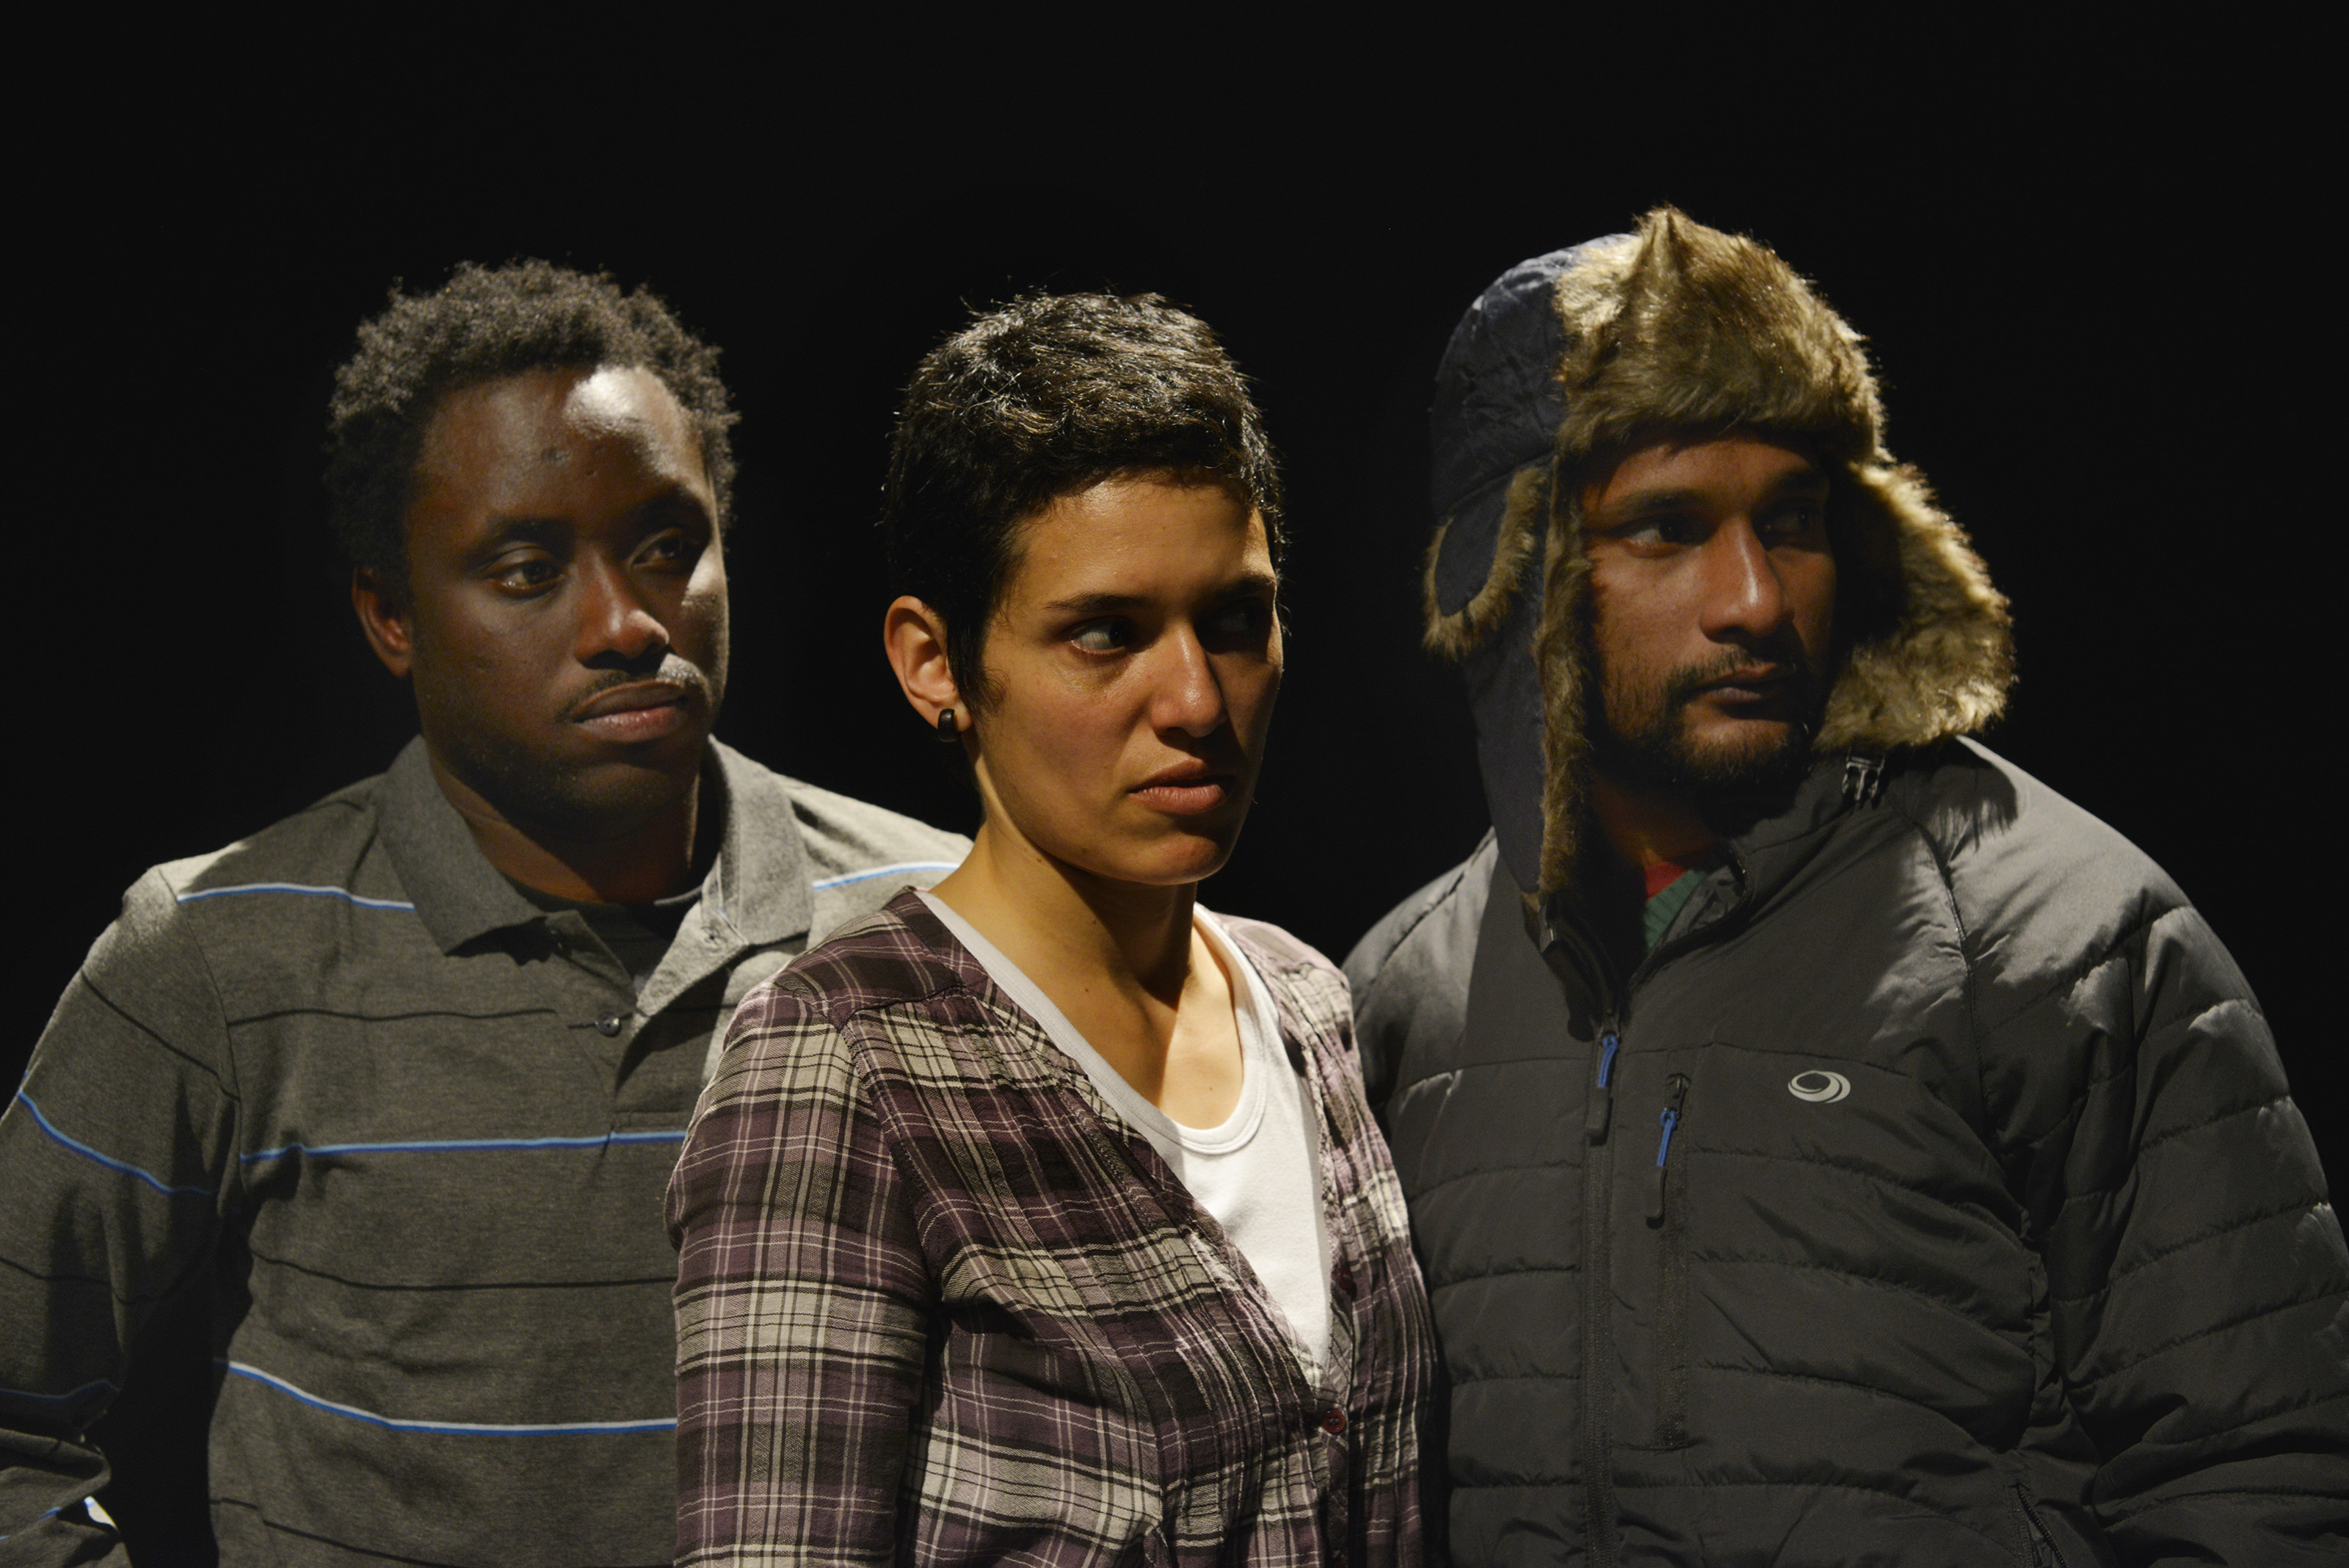 Teatro en el GAM: sistema educacional chileno es cuestionado en escena